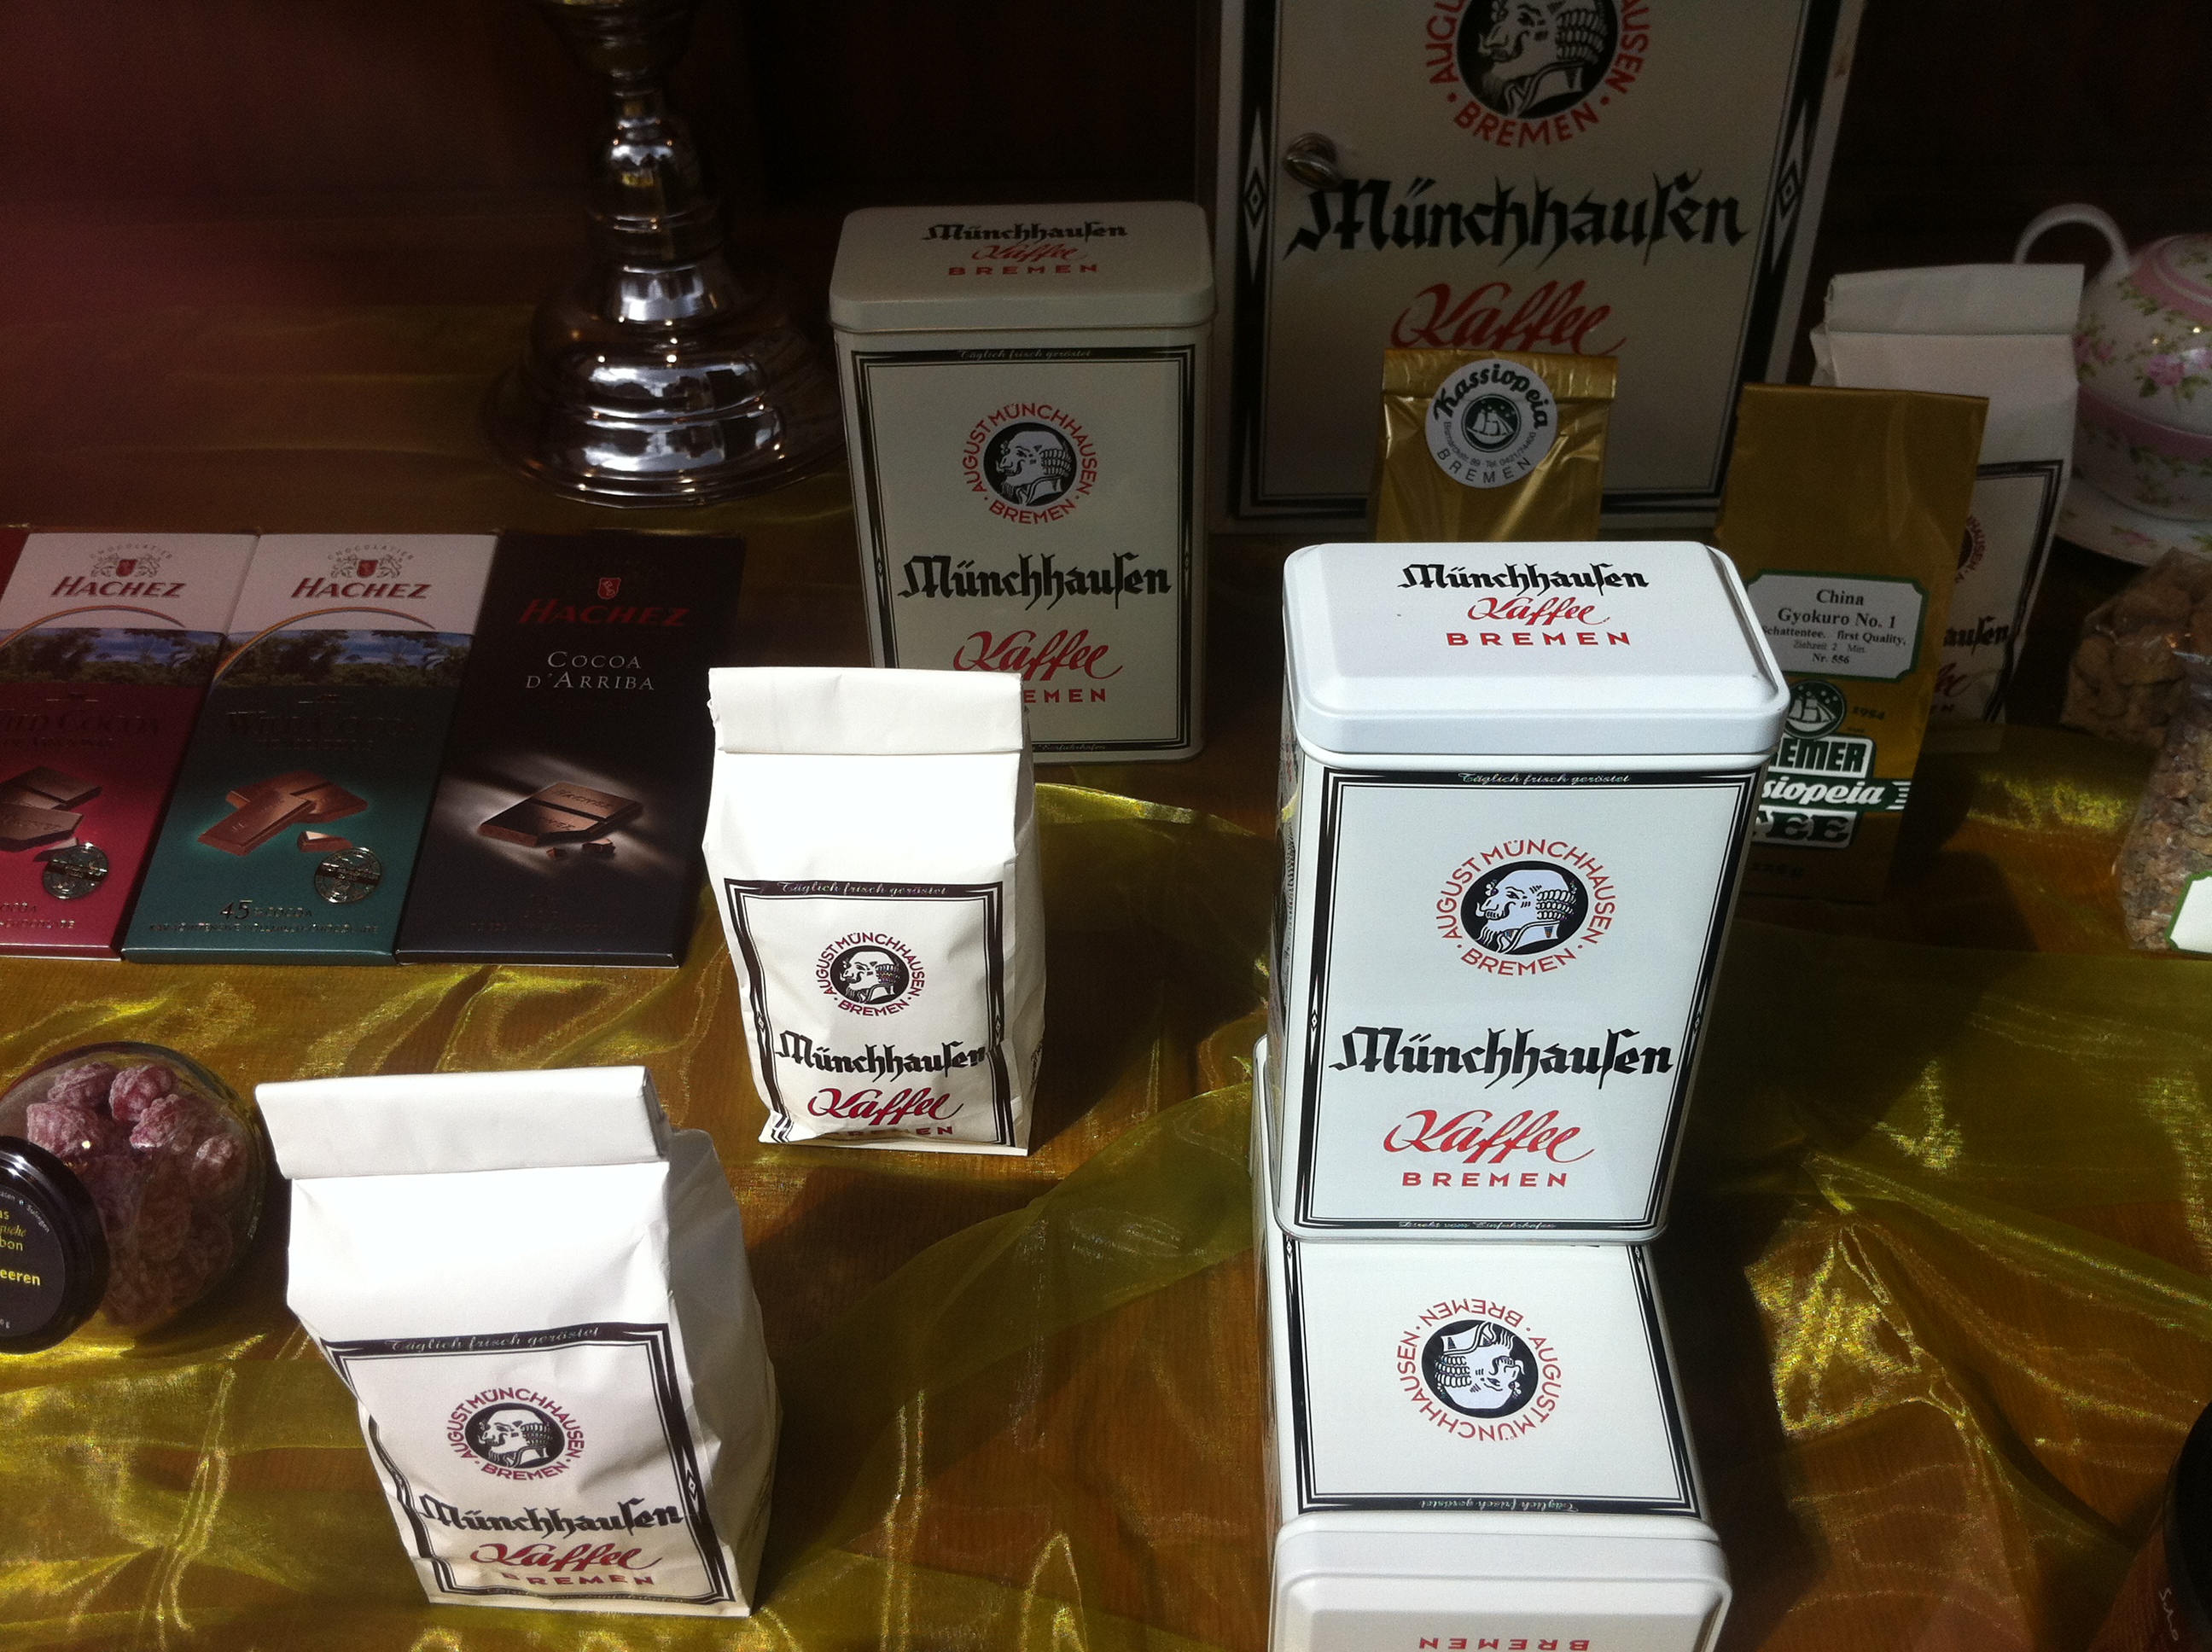 Zigarren Berndt führt auch Münchhausen Kaffee aus Bremen